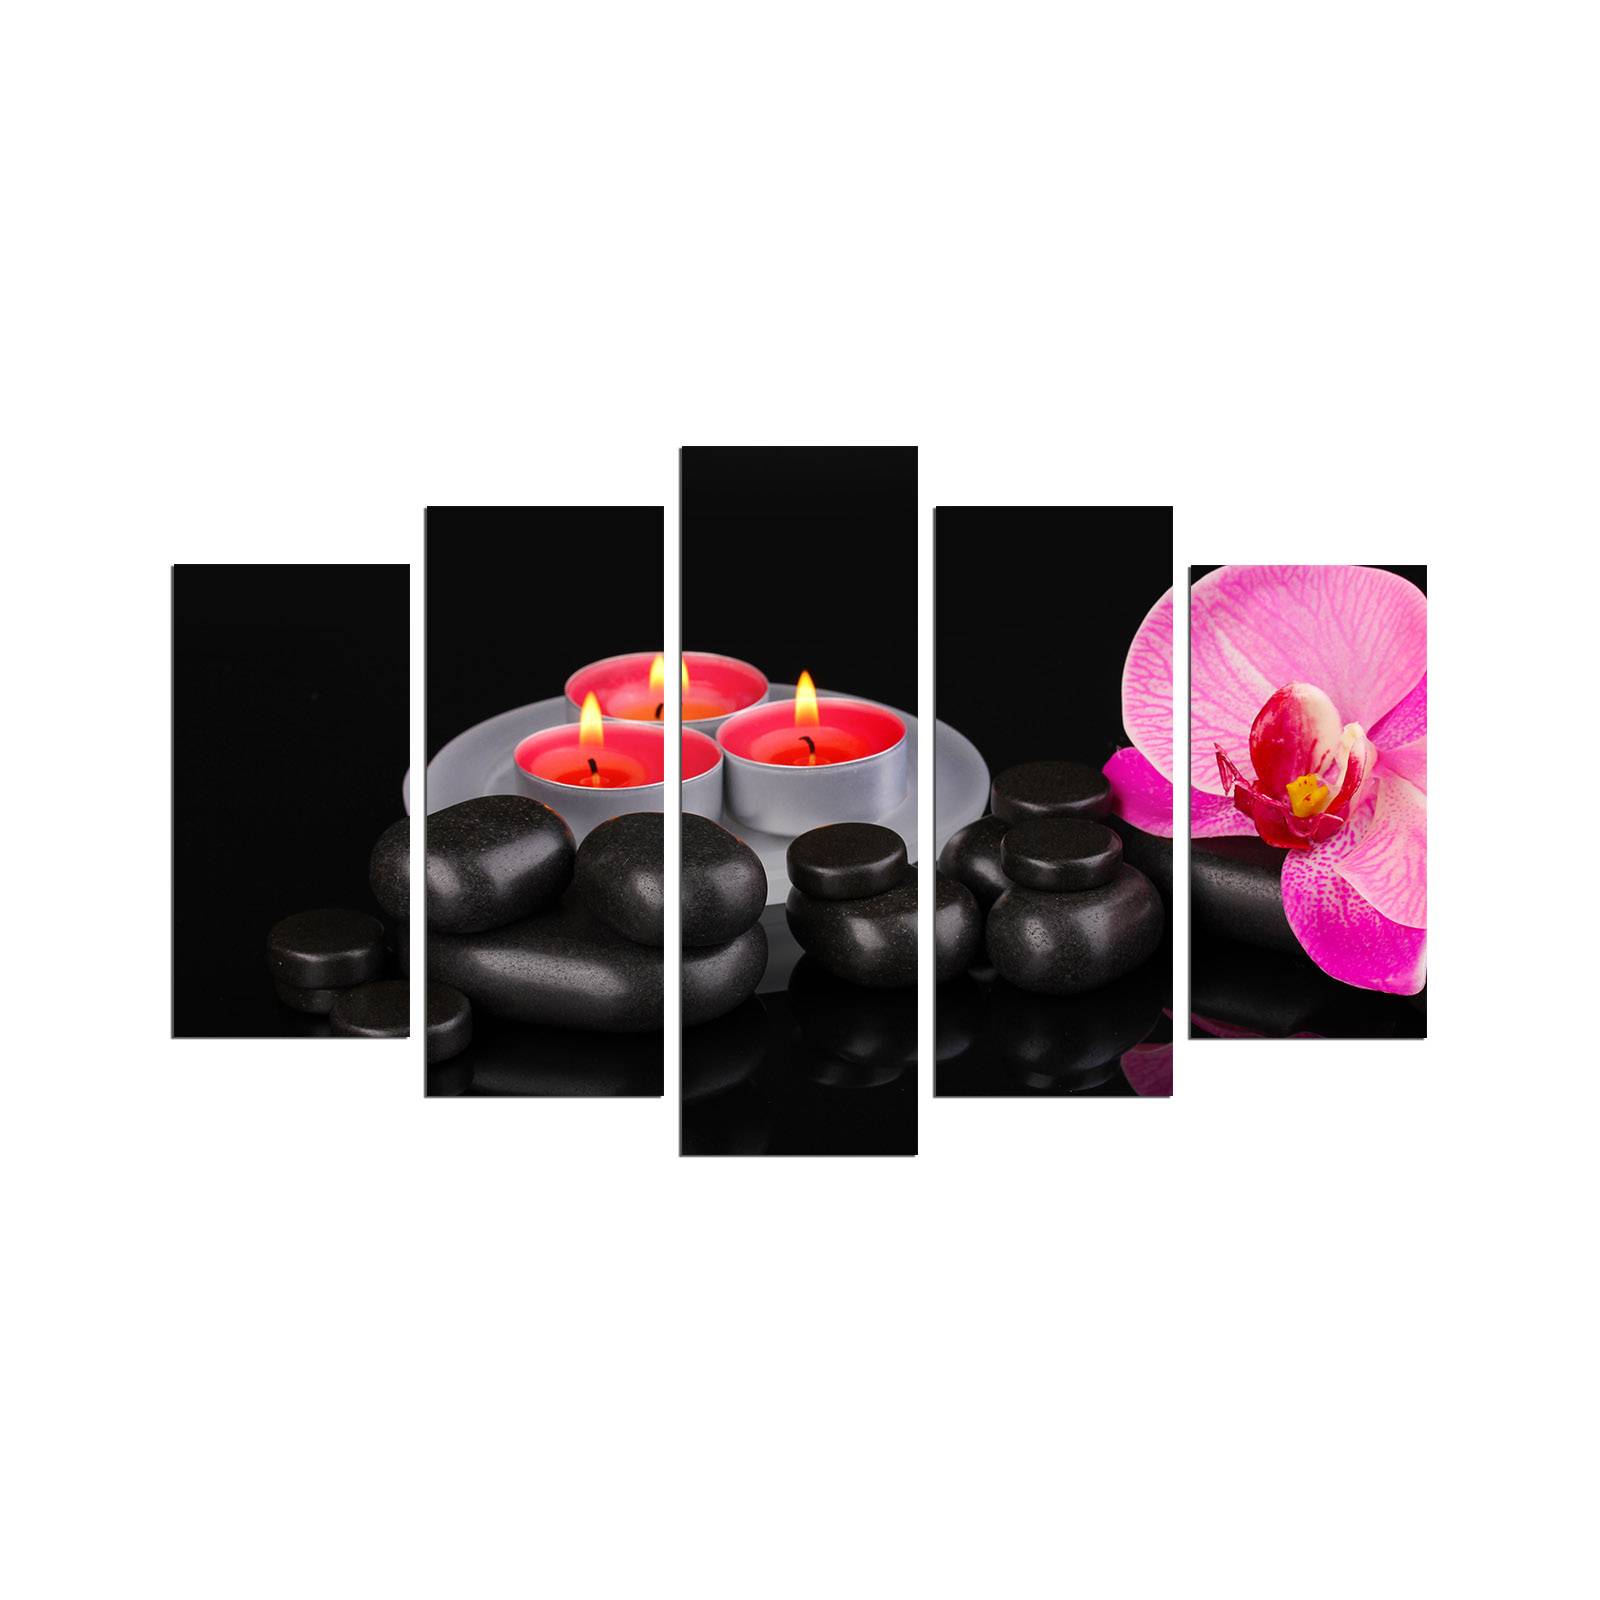 Pentapittico Atos con motivo Spa a ciottoli neri e orchidee e candele grigie, rosse e rosa